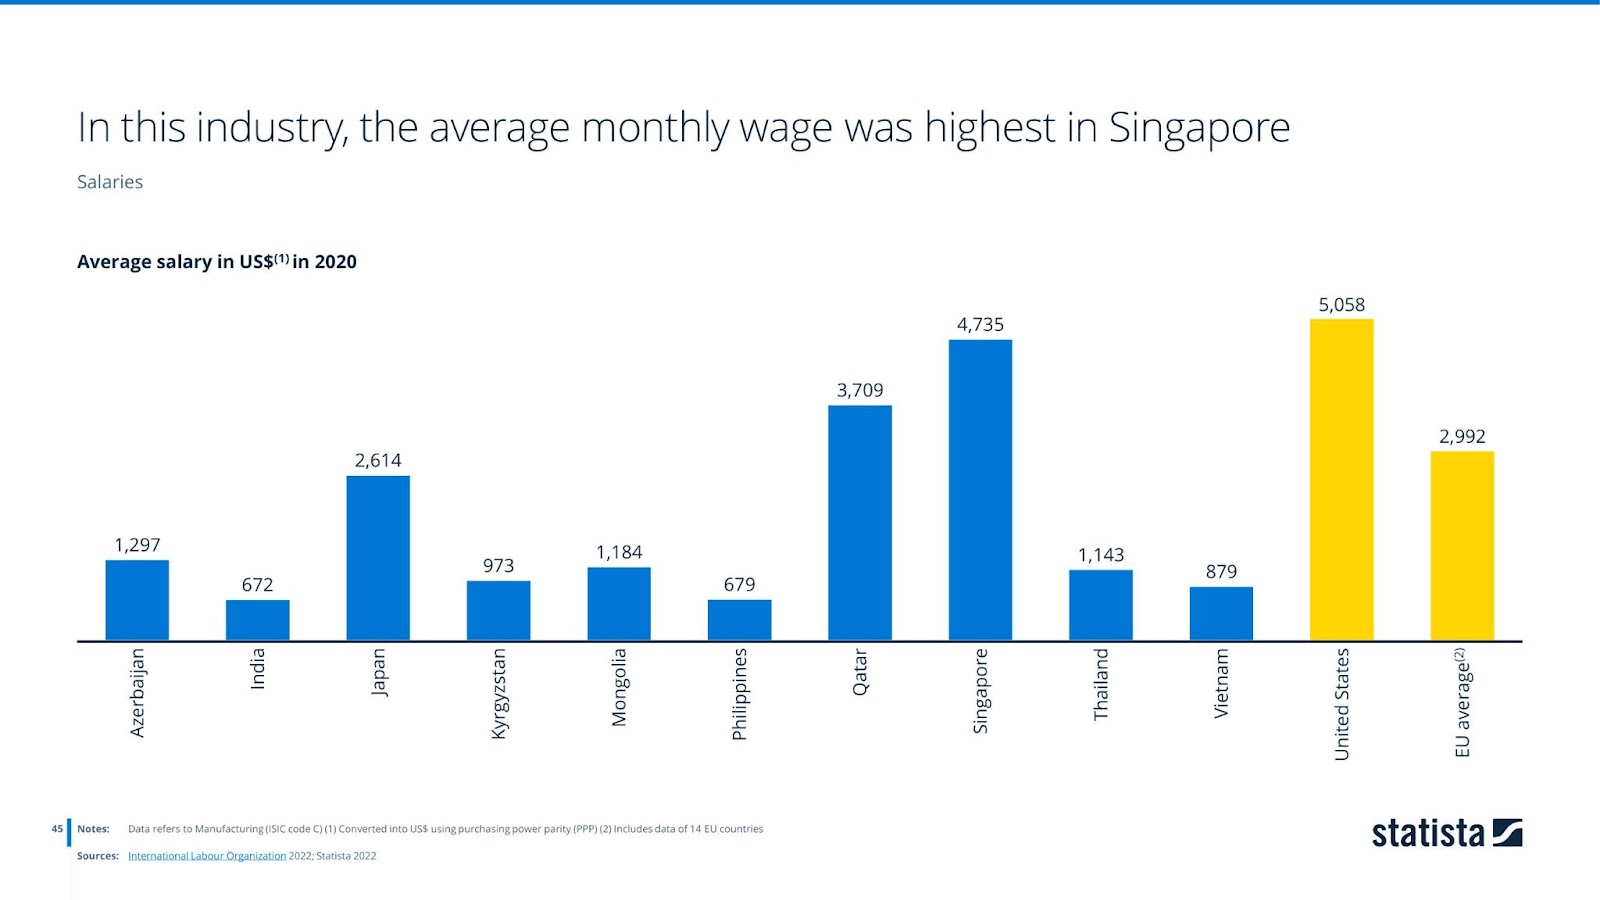 Average salary in US$ in 2020